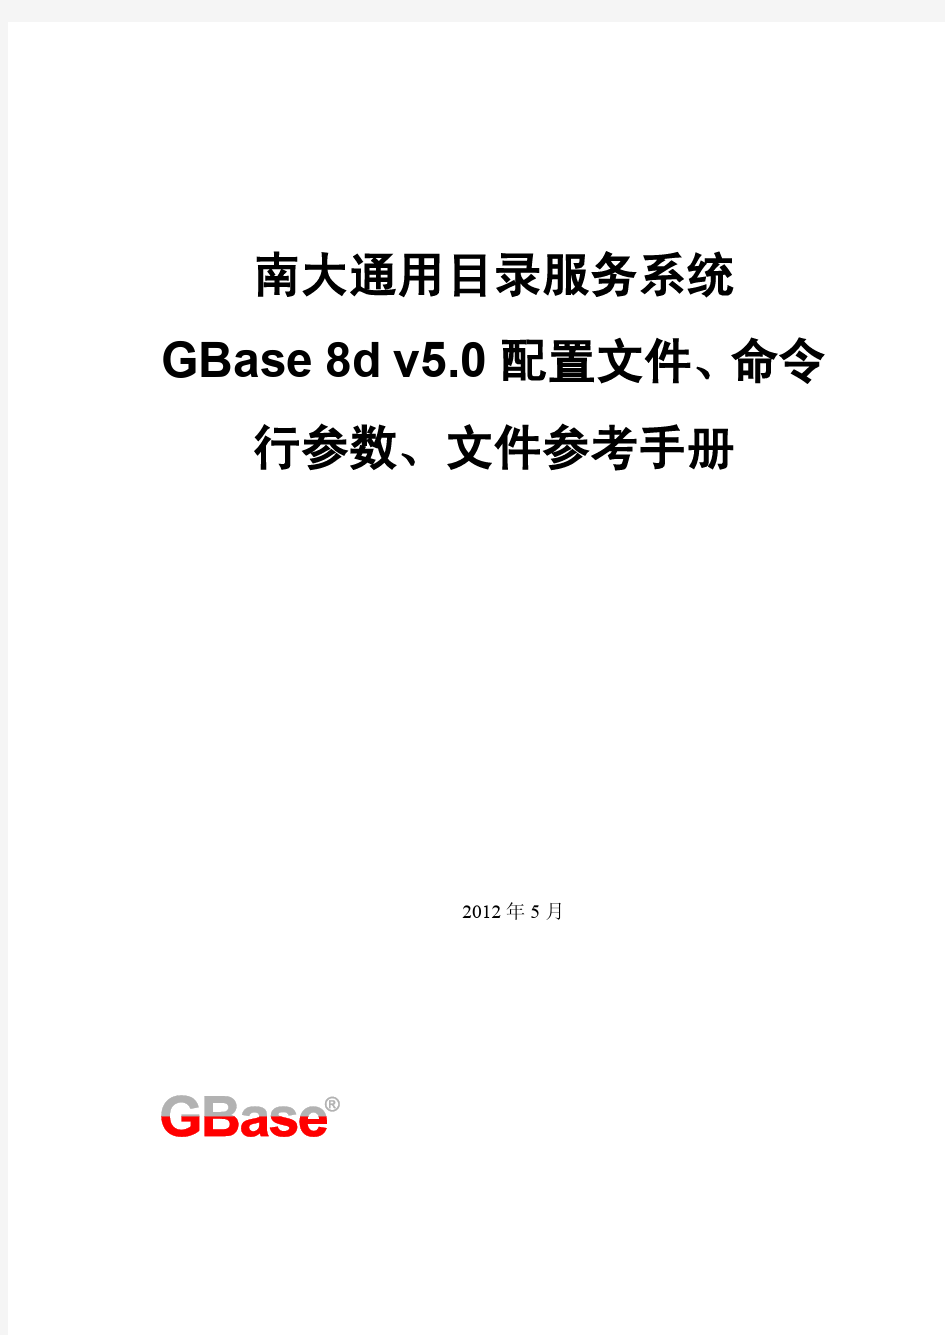 GBase 8d 配置文件、命令行参数、文件参考手册